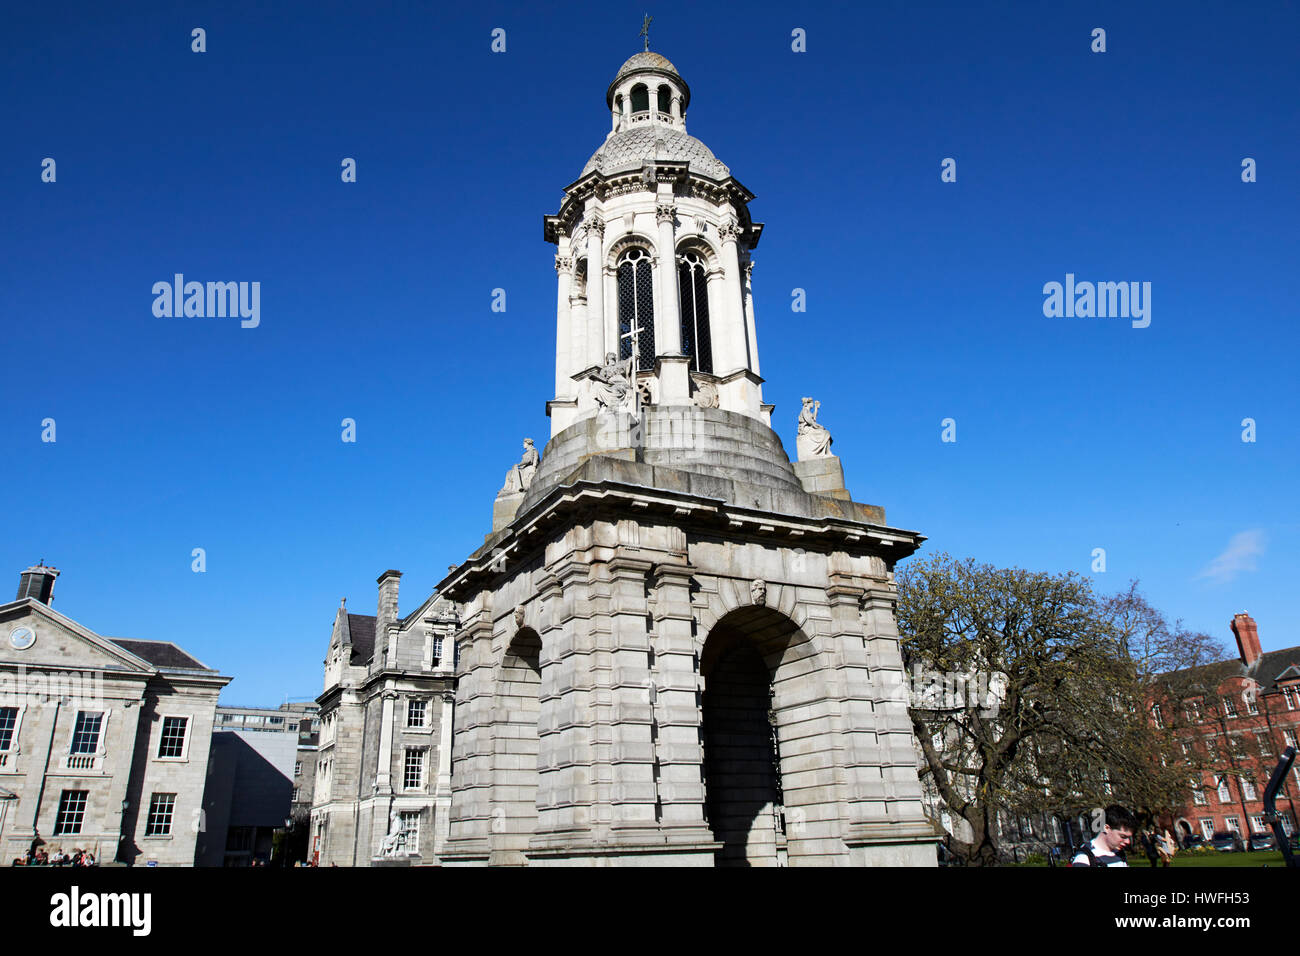 the campanile of trinity college Dublin in parliament square Republic of Ireland Stock Photo